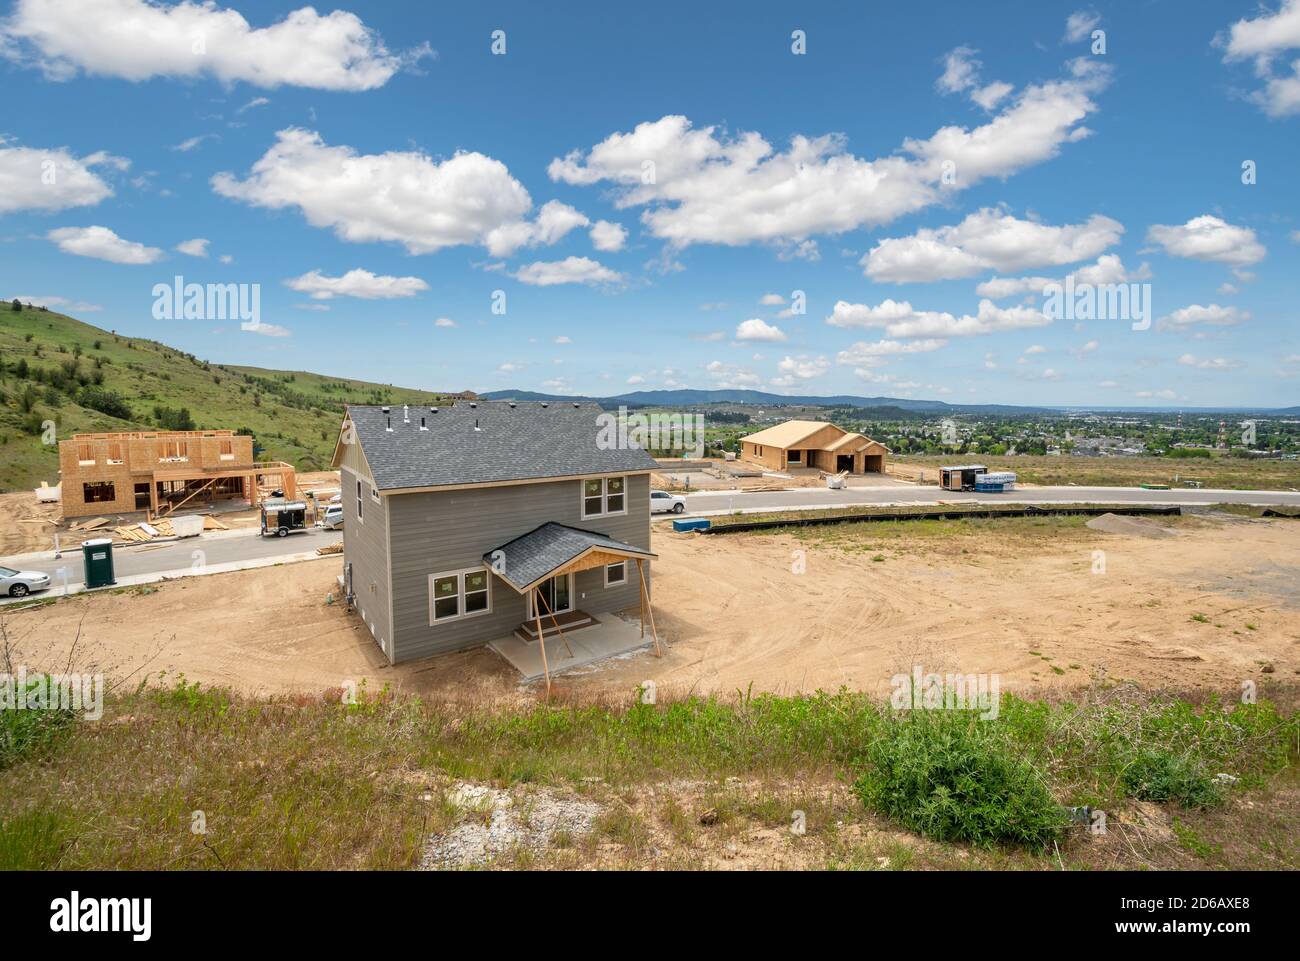 De nouvelles maisons en construction sont en cours de construction dans une subdivision au sommet d'une colline surplombant une vallée dans une région de nouvelles maisons dans la région de Spokane, Washington des États-Unis Banque D'Images